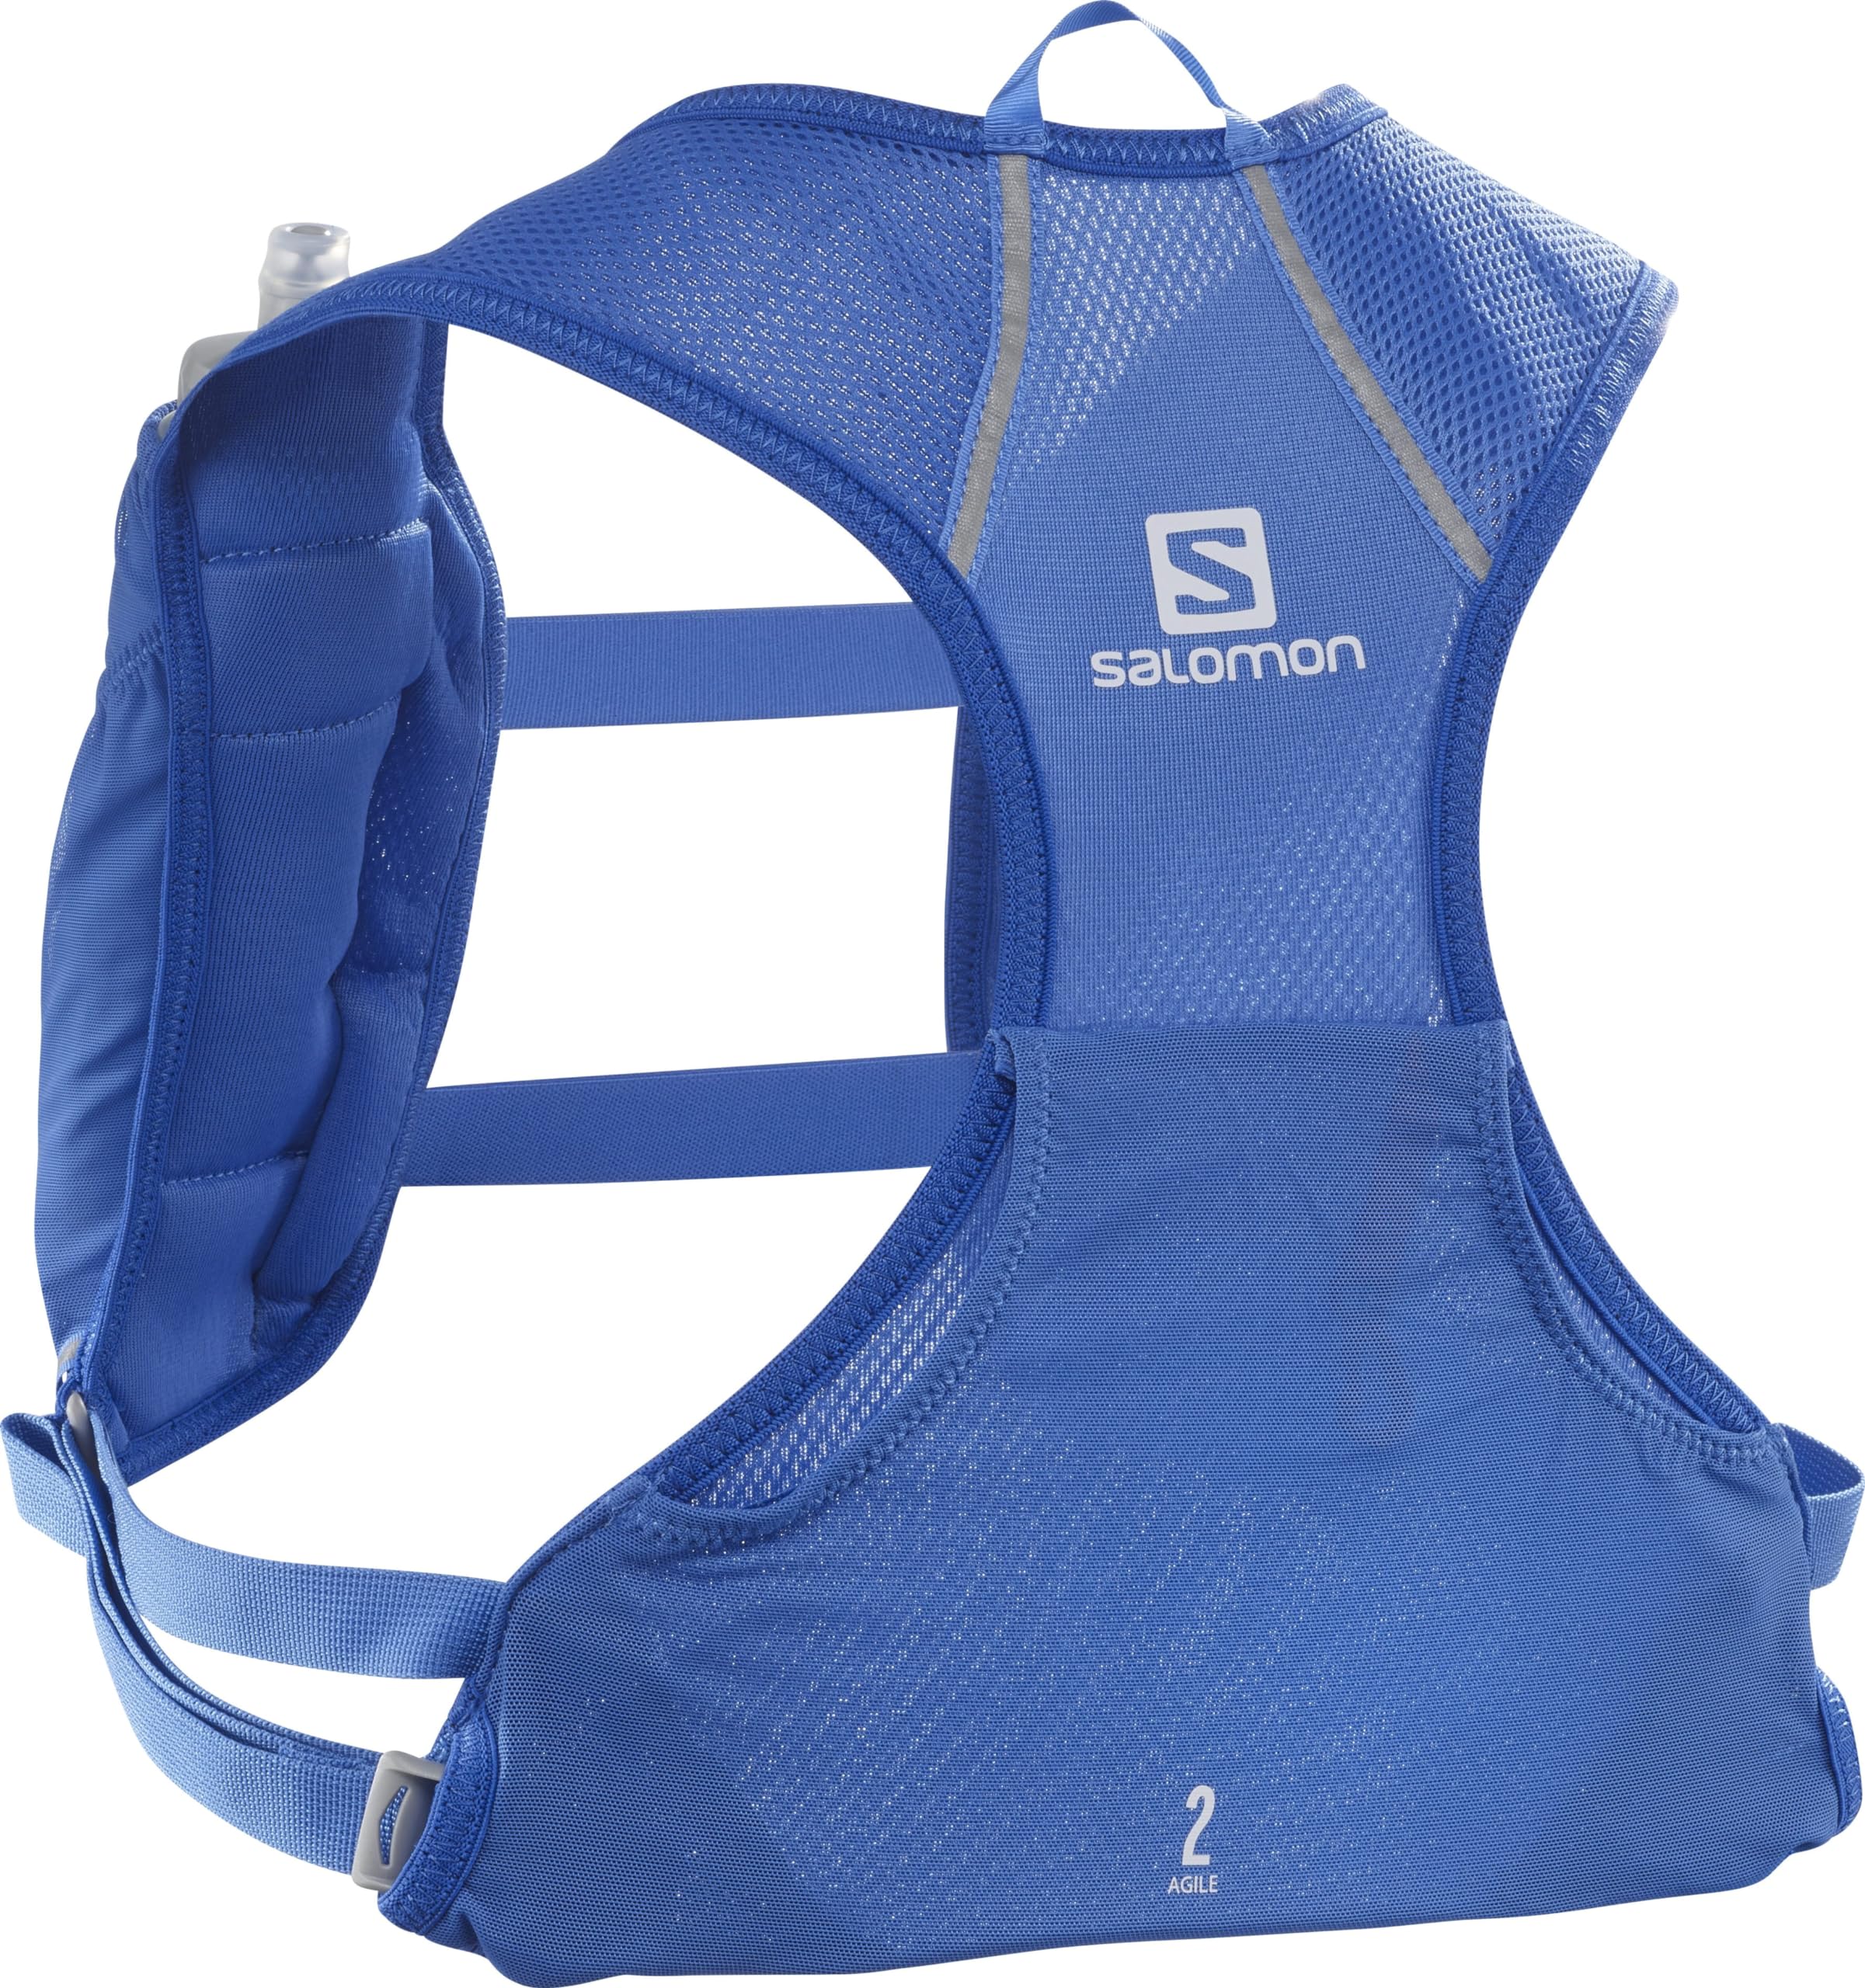 Salomon Agile 2 Unisex Hydrationsweste Trail running Wandern MTB, Platz für das Wichtigste, Reflektierende Details, Bewegungskomfort, Blau